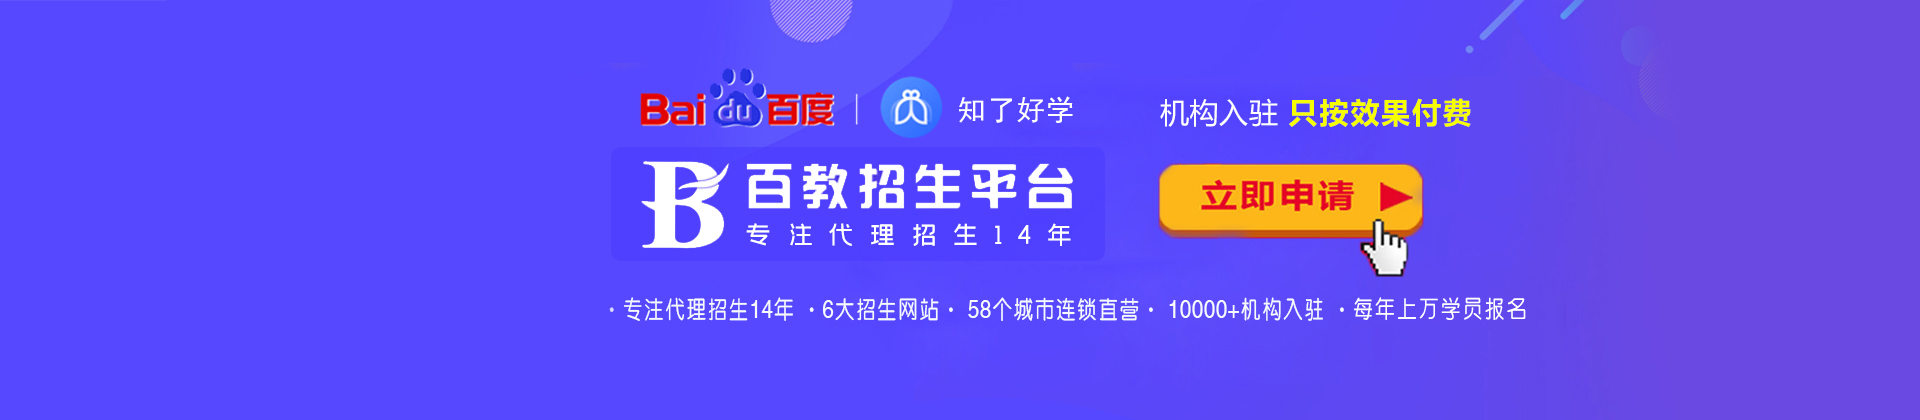 长沙百教网-中国硬实力招生平台